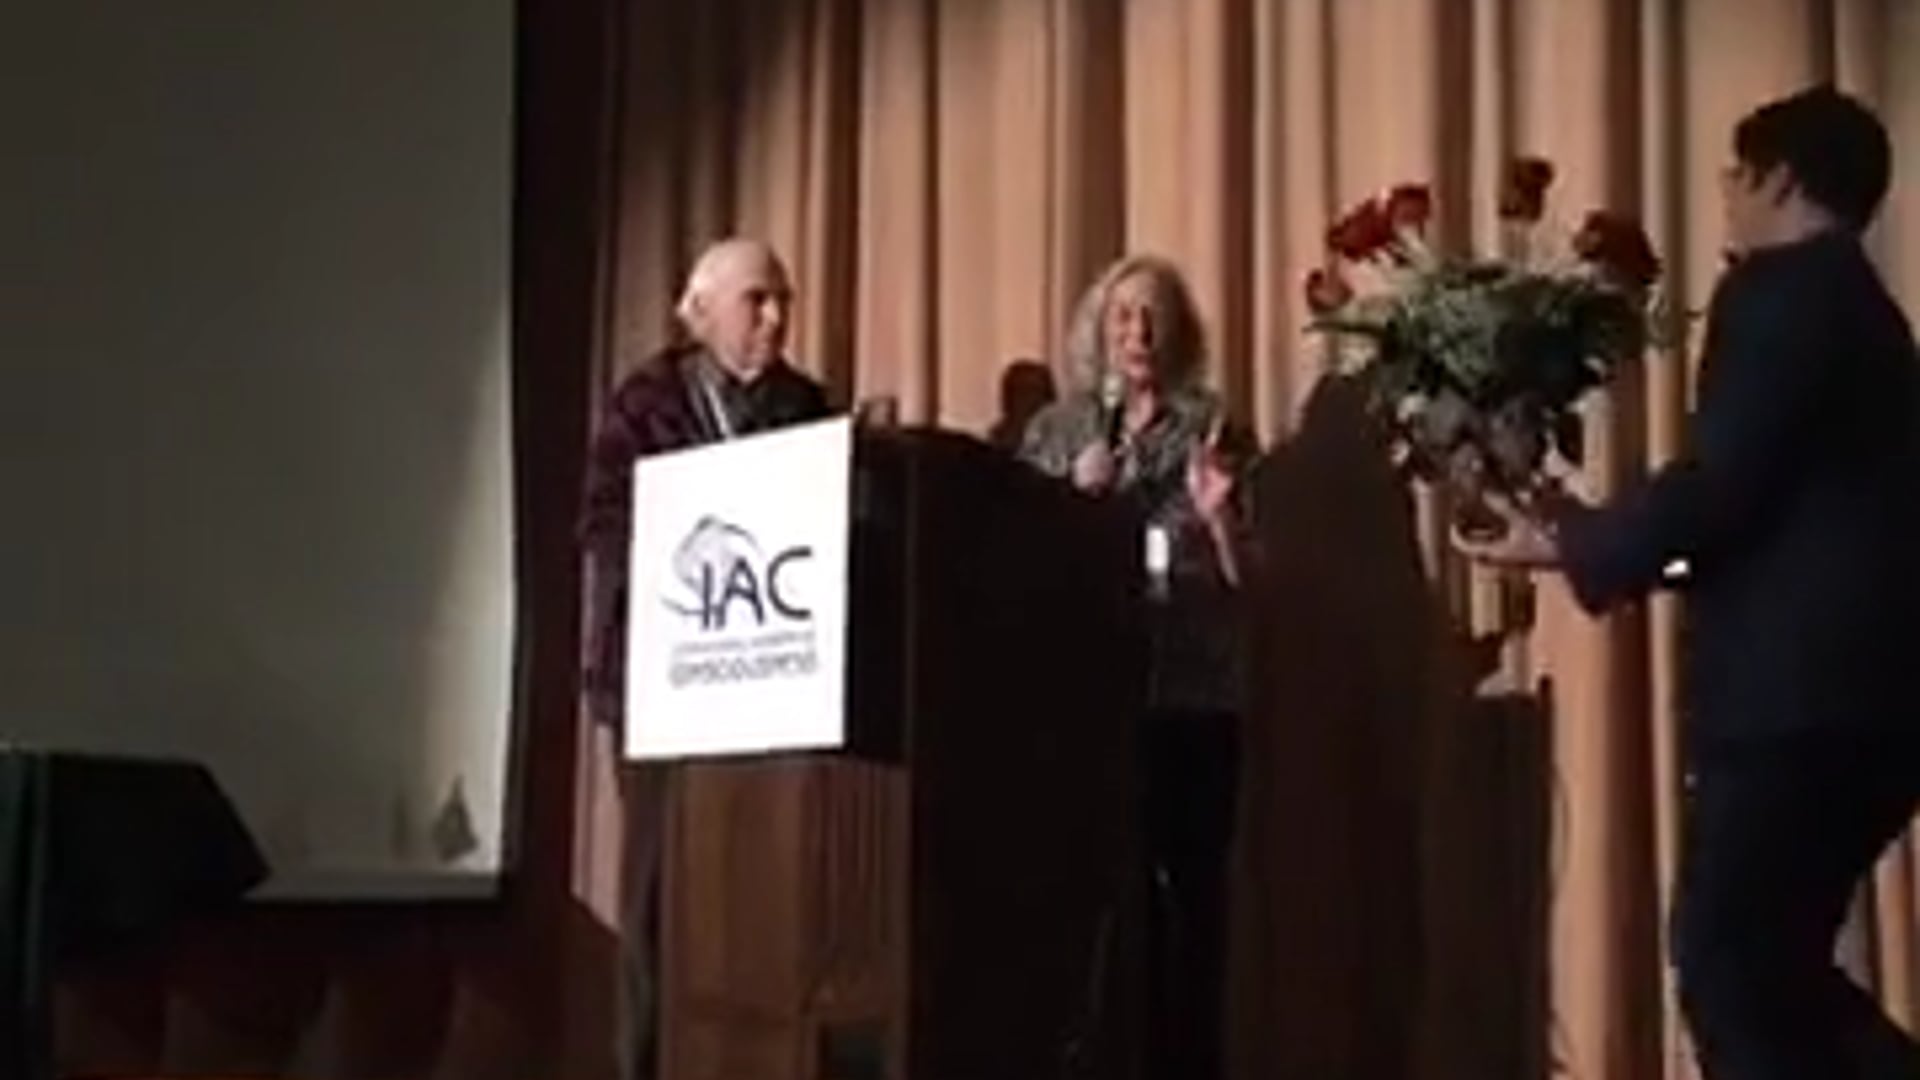 Robert Jahn and Brenda Dunne - Lifetime Achievement Award